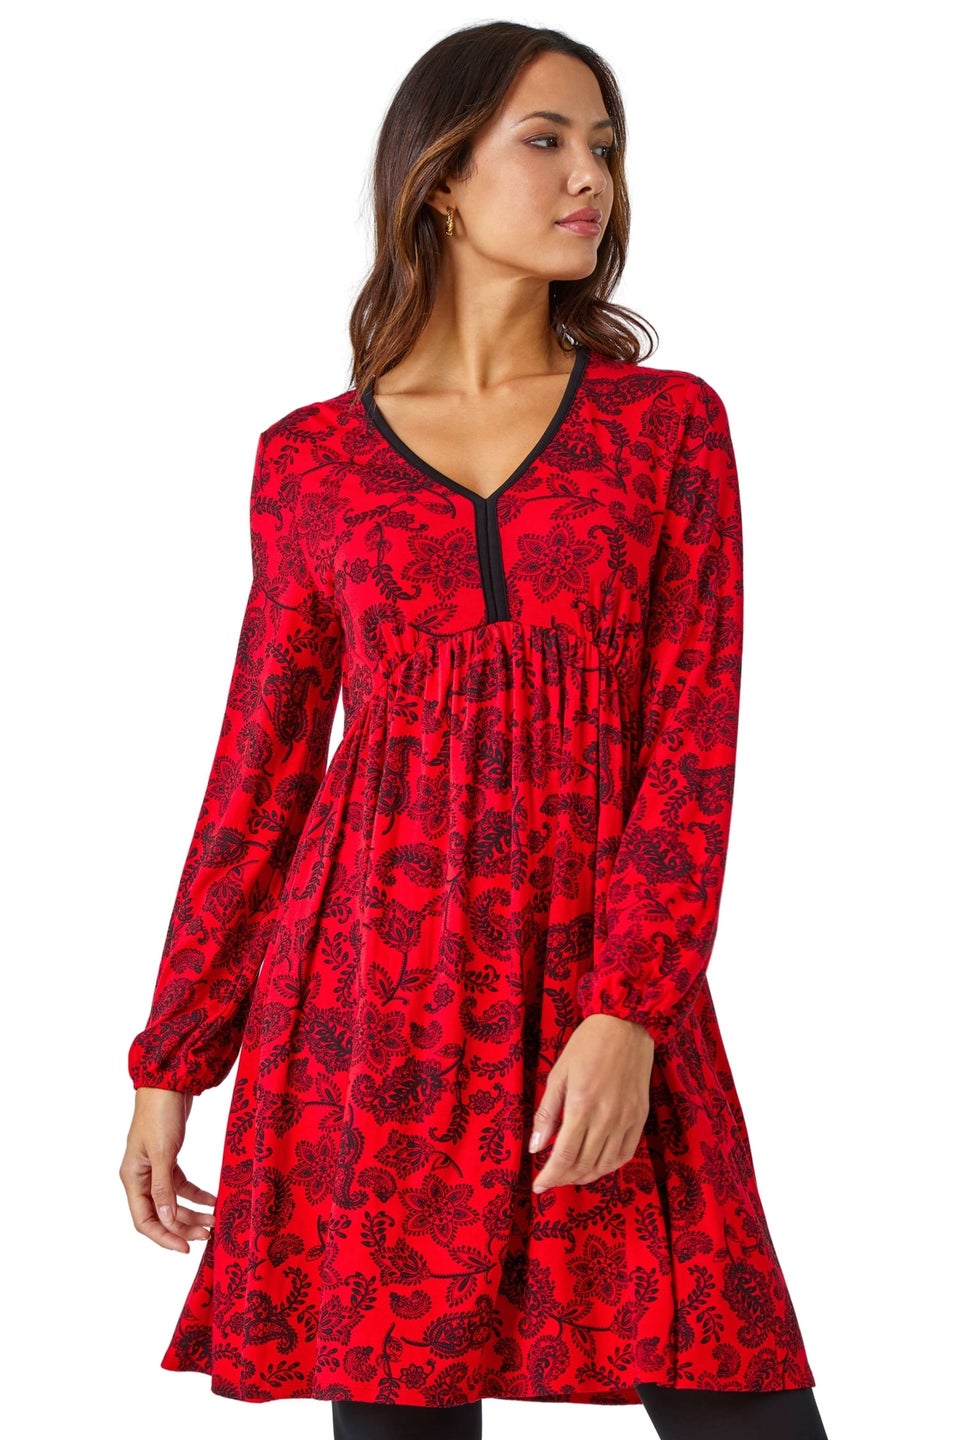 Красное платье из эластичного джерси цветочным принтом Roman цена и фото